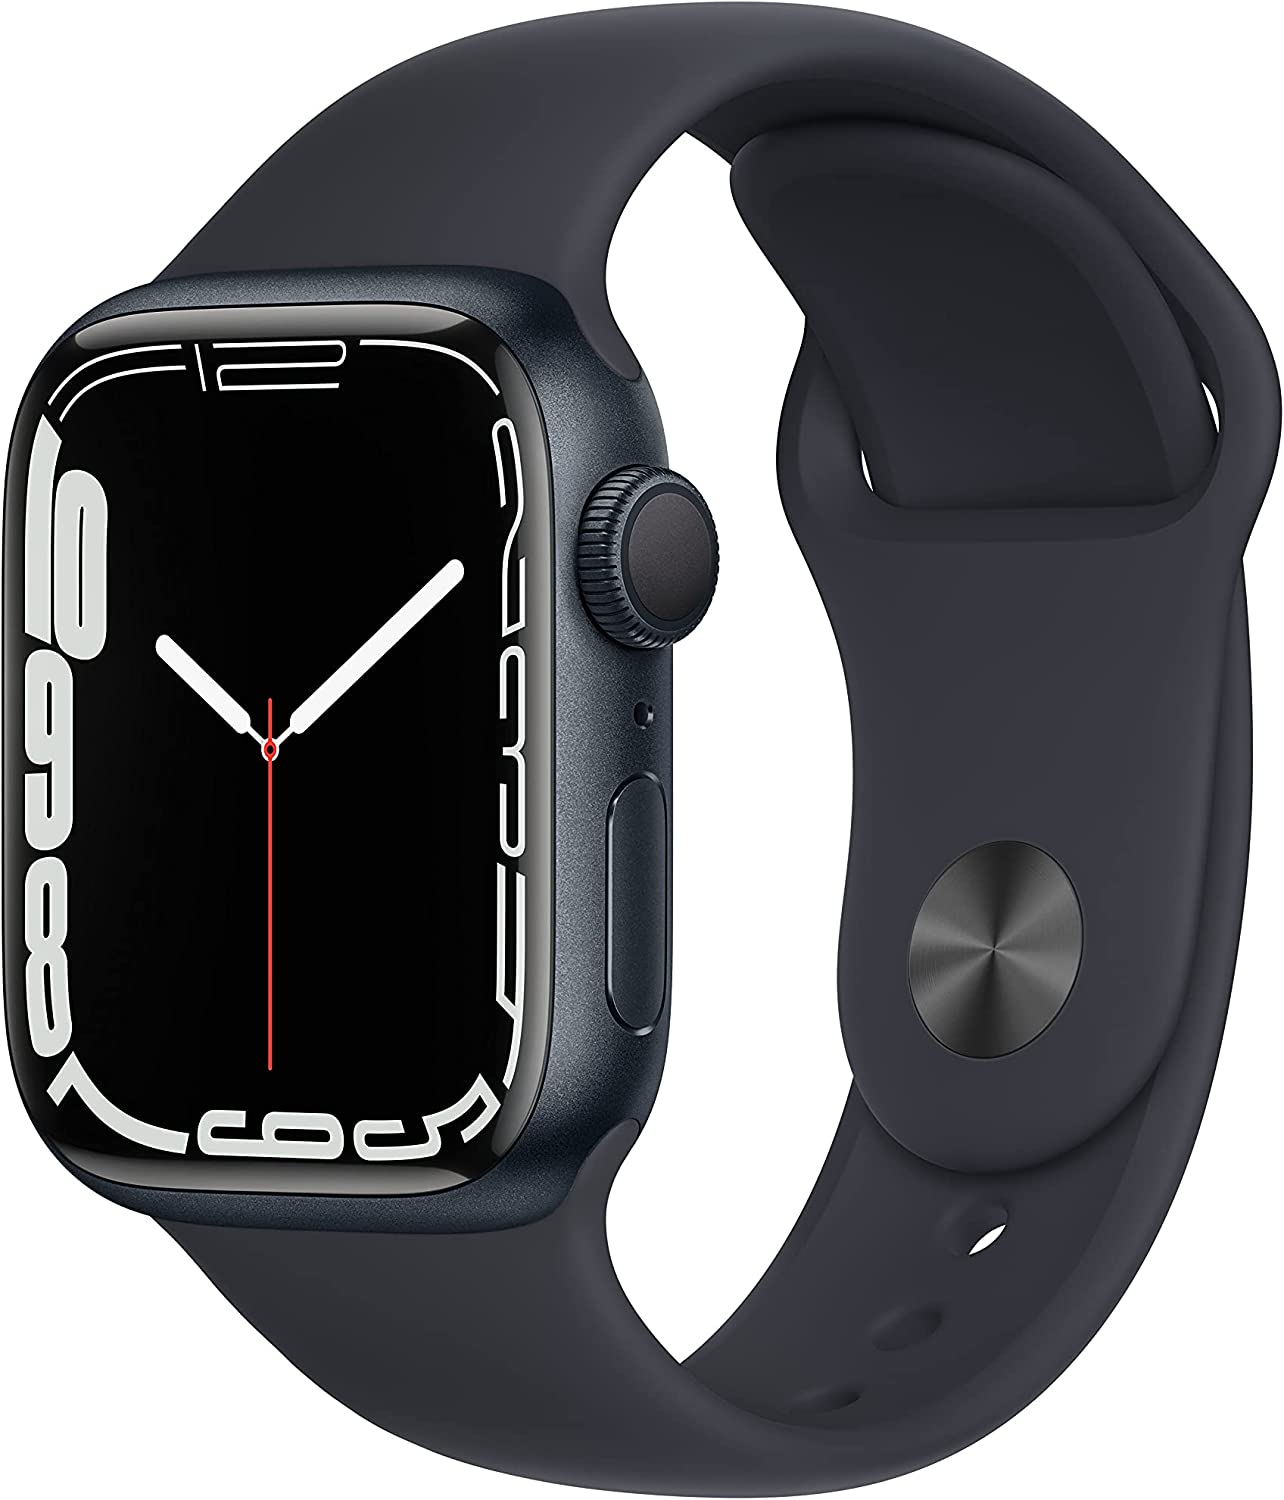 Apple Watch 7 vs Apple Watch 8